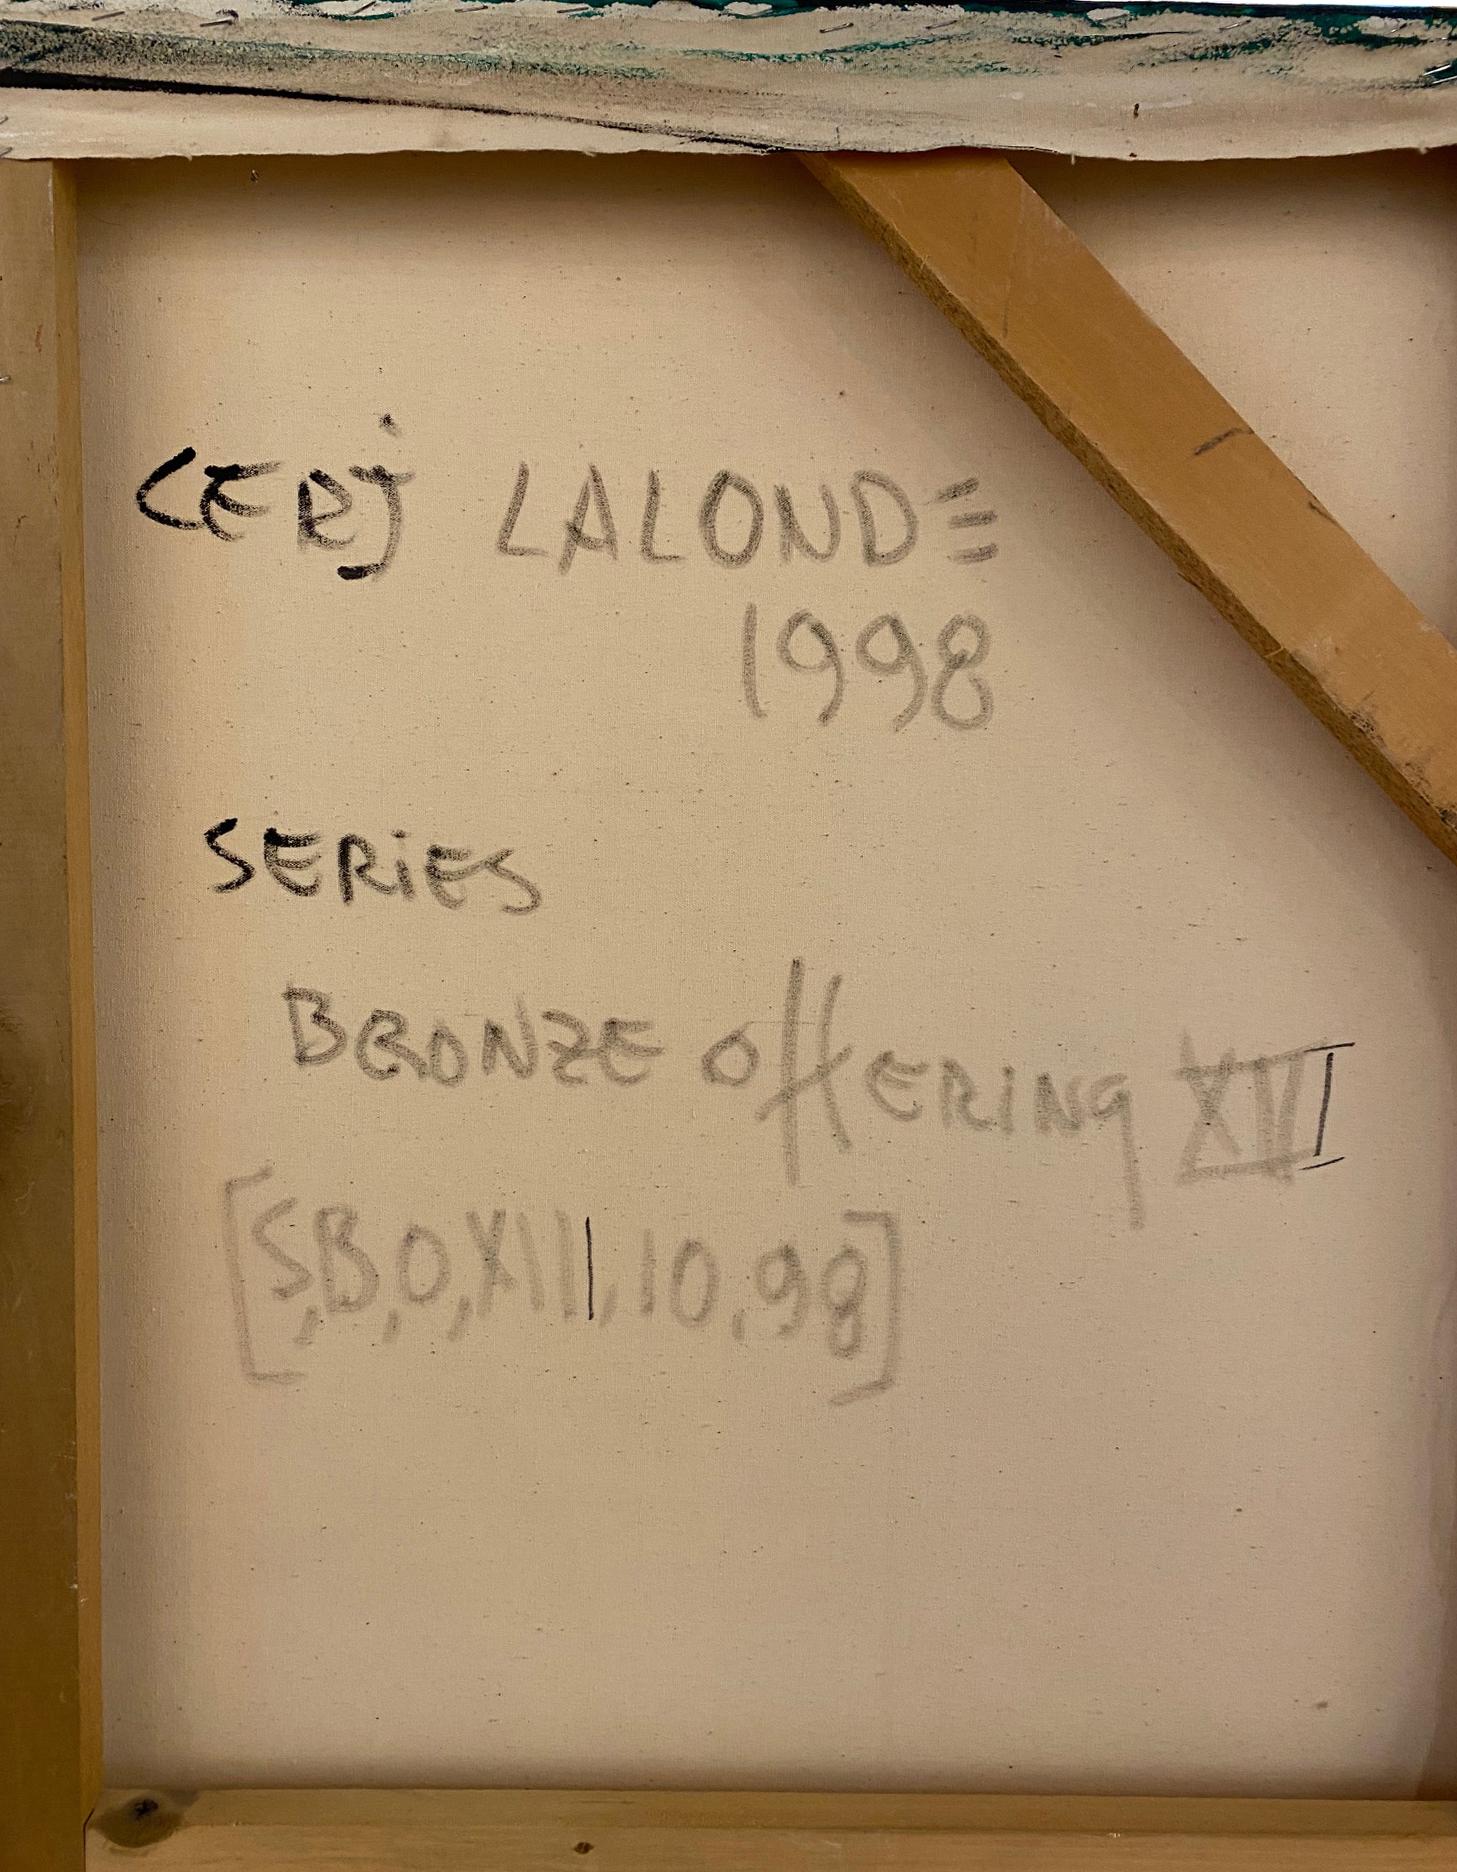 Cerj Lalonde, né en 1954 au Canada, est un artiste aux multiples talents, connu pour ses diverses expressions créatives. Dotée d'un esprit d'adaptation, Mme Lalonde navigue avec aisance entre diverses formes d'art, notamment la peinture, la